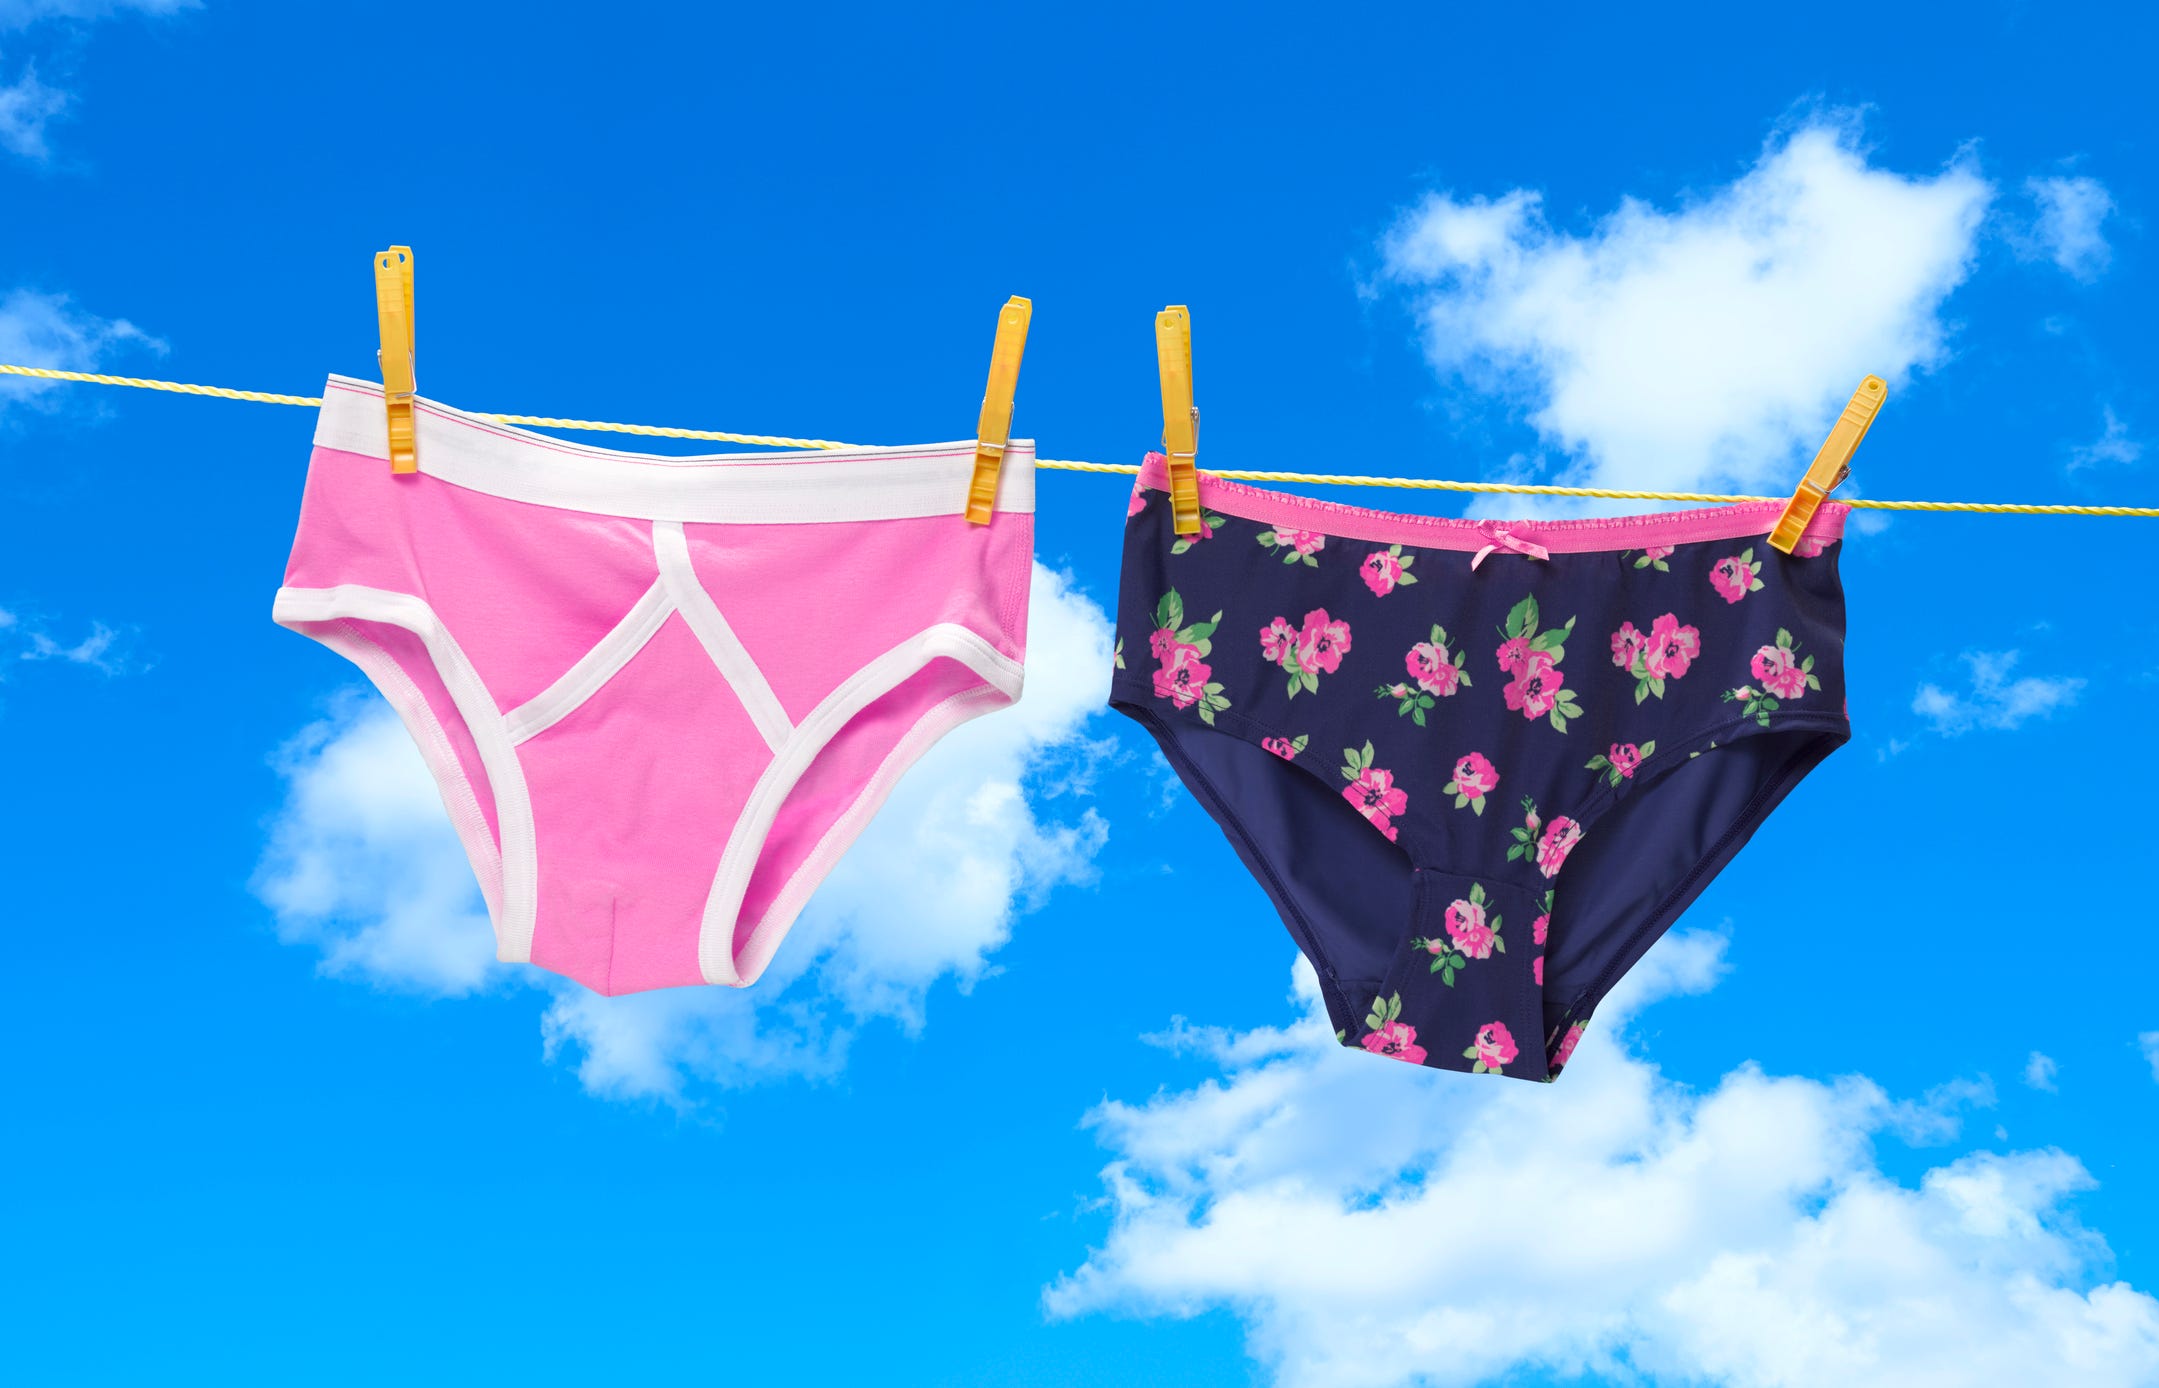 Why does Vaginal Discharge Bleach Underwear?